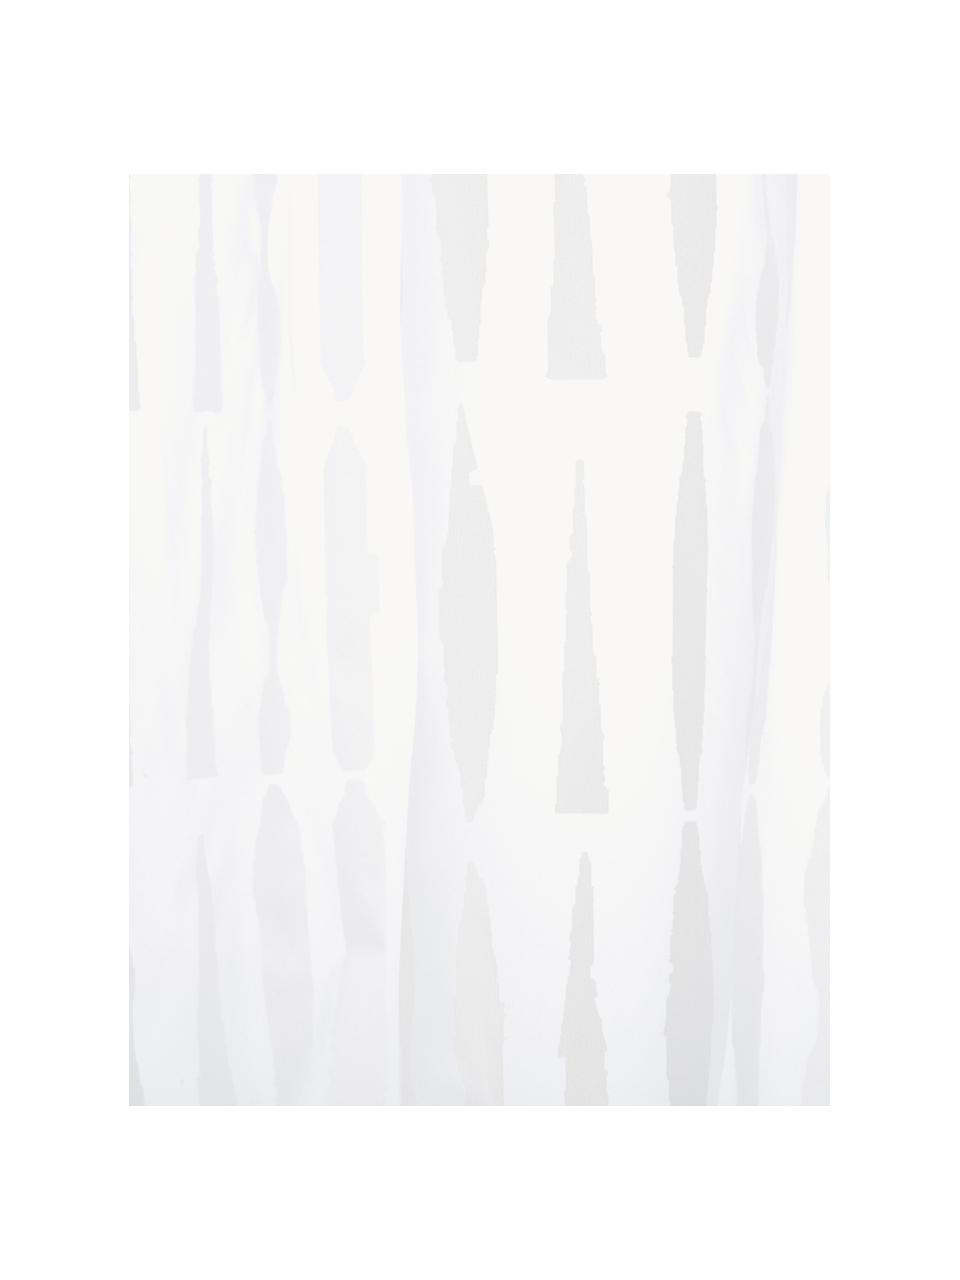 Zasłona prysznicowa Zora, Eko tworzywo sztuczne (PEVA), bez PVC
Produkt wodoodporny, Biały, transparentny, S 180 x D 200 cm